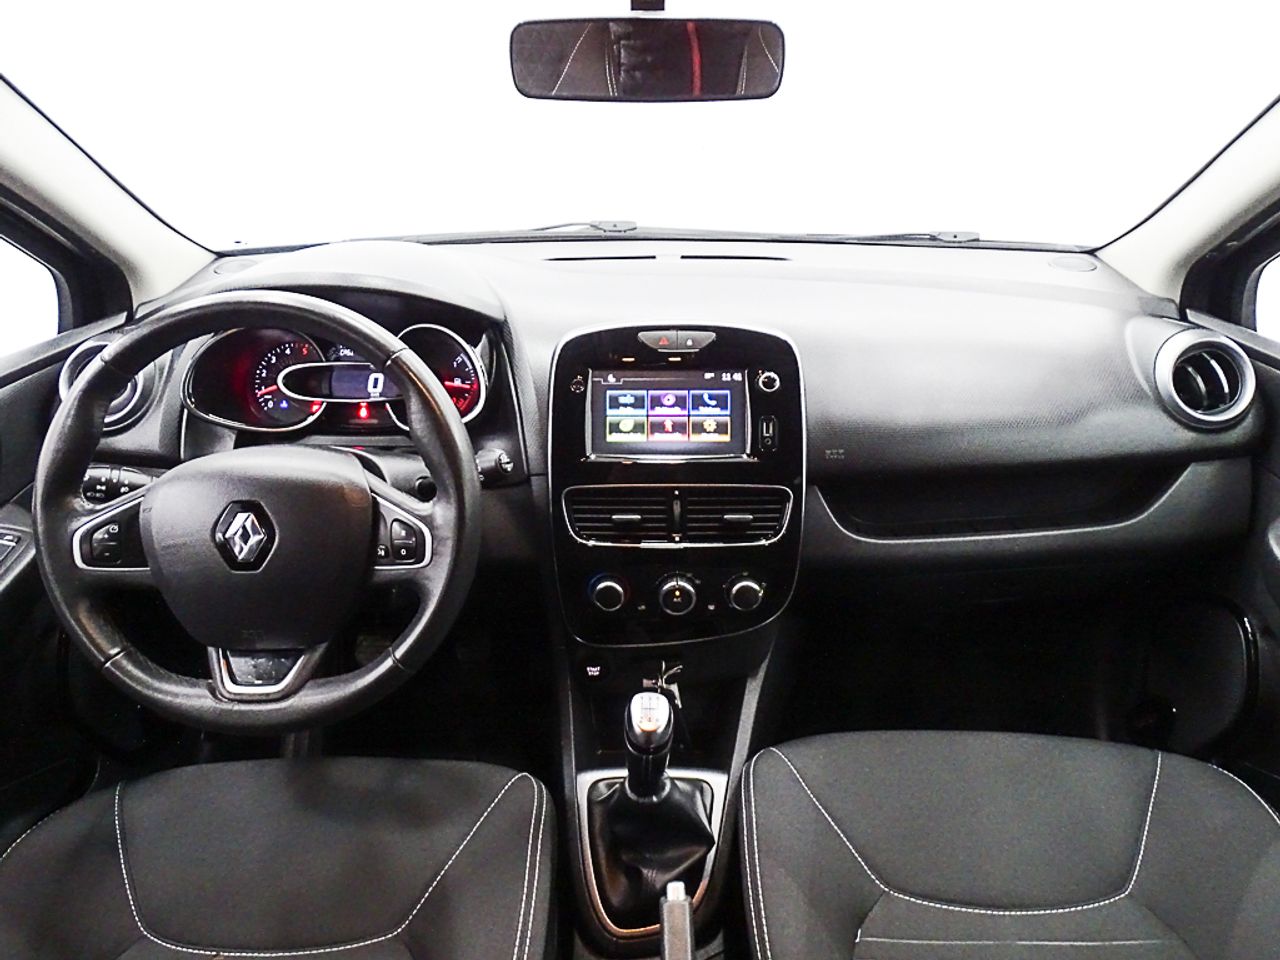 Foto Renault Clio 3